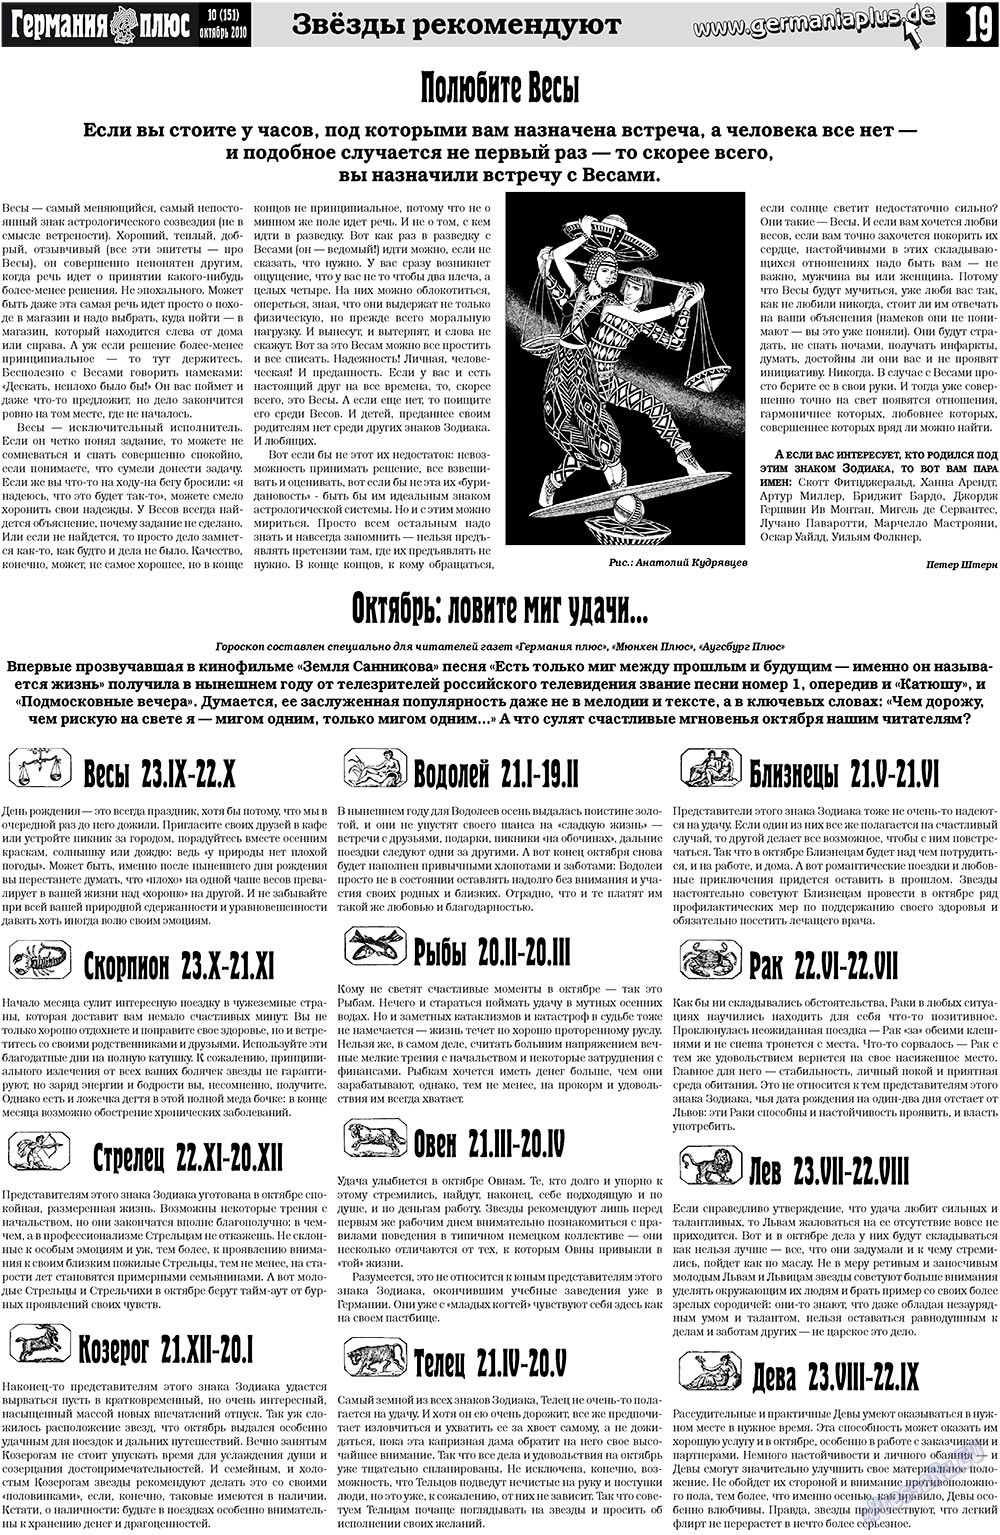 Германия плюс, газета. 2010 №10 стр.19